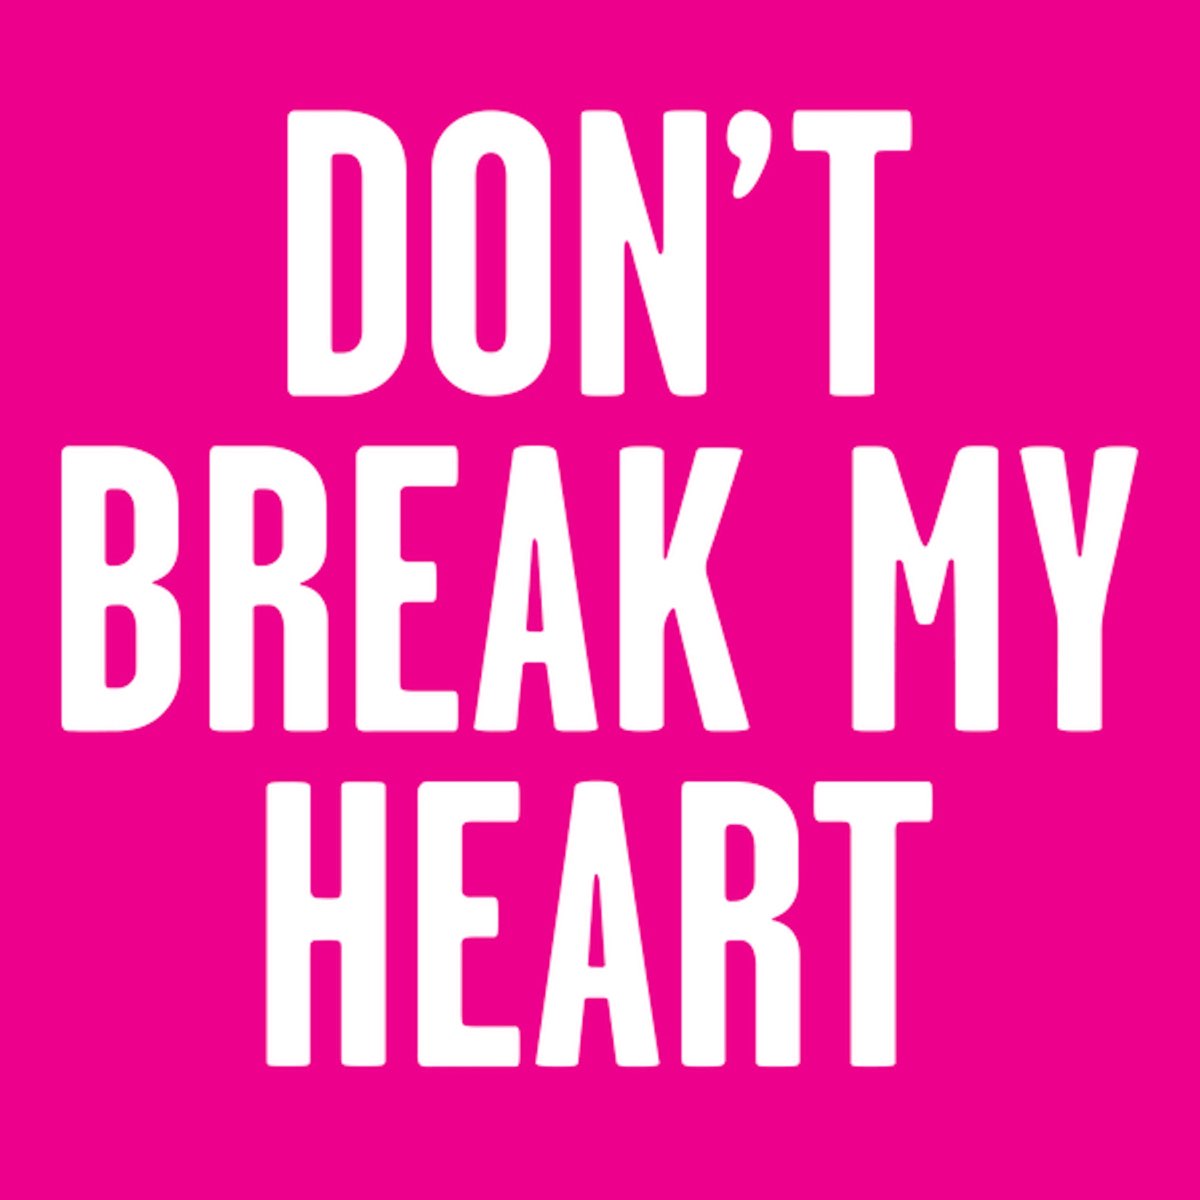 Плиз донт май харт. Don't Break my Heart. Please Break my Heart. Please don't Break my Heart альбом. Донт брейк май Харт слушать.